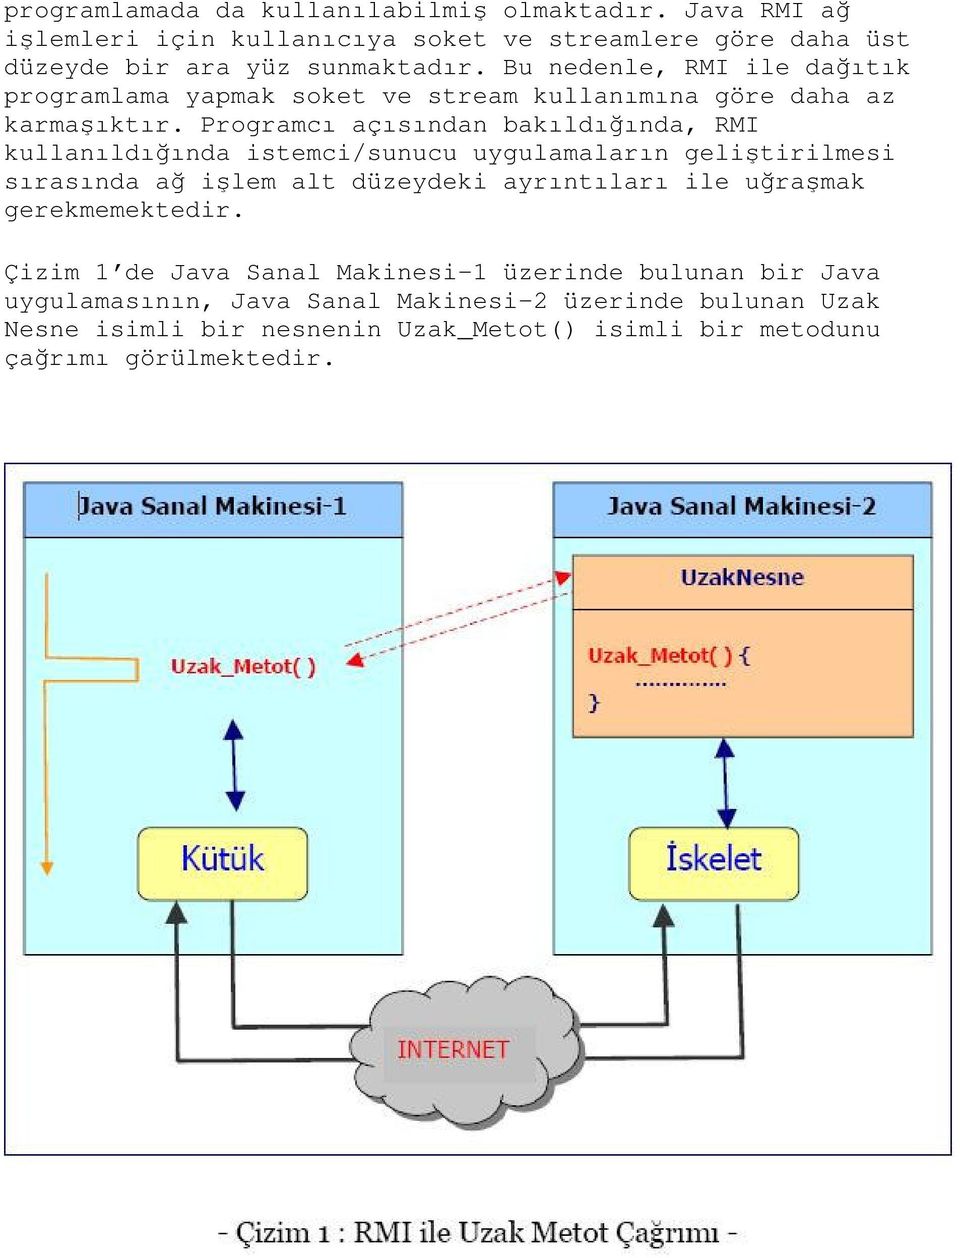 Programcı açısından bakıldığında, RMI kullanıldığında istemci/sunucu uygulamaların geliştirilmesi sırasında ağ işlem alt düzeydeki ayrıntıları ile uğraşmak